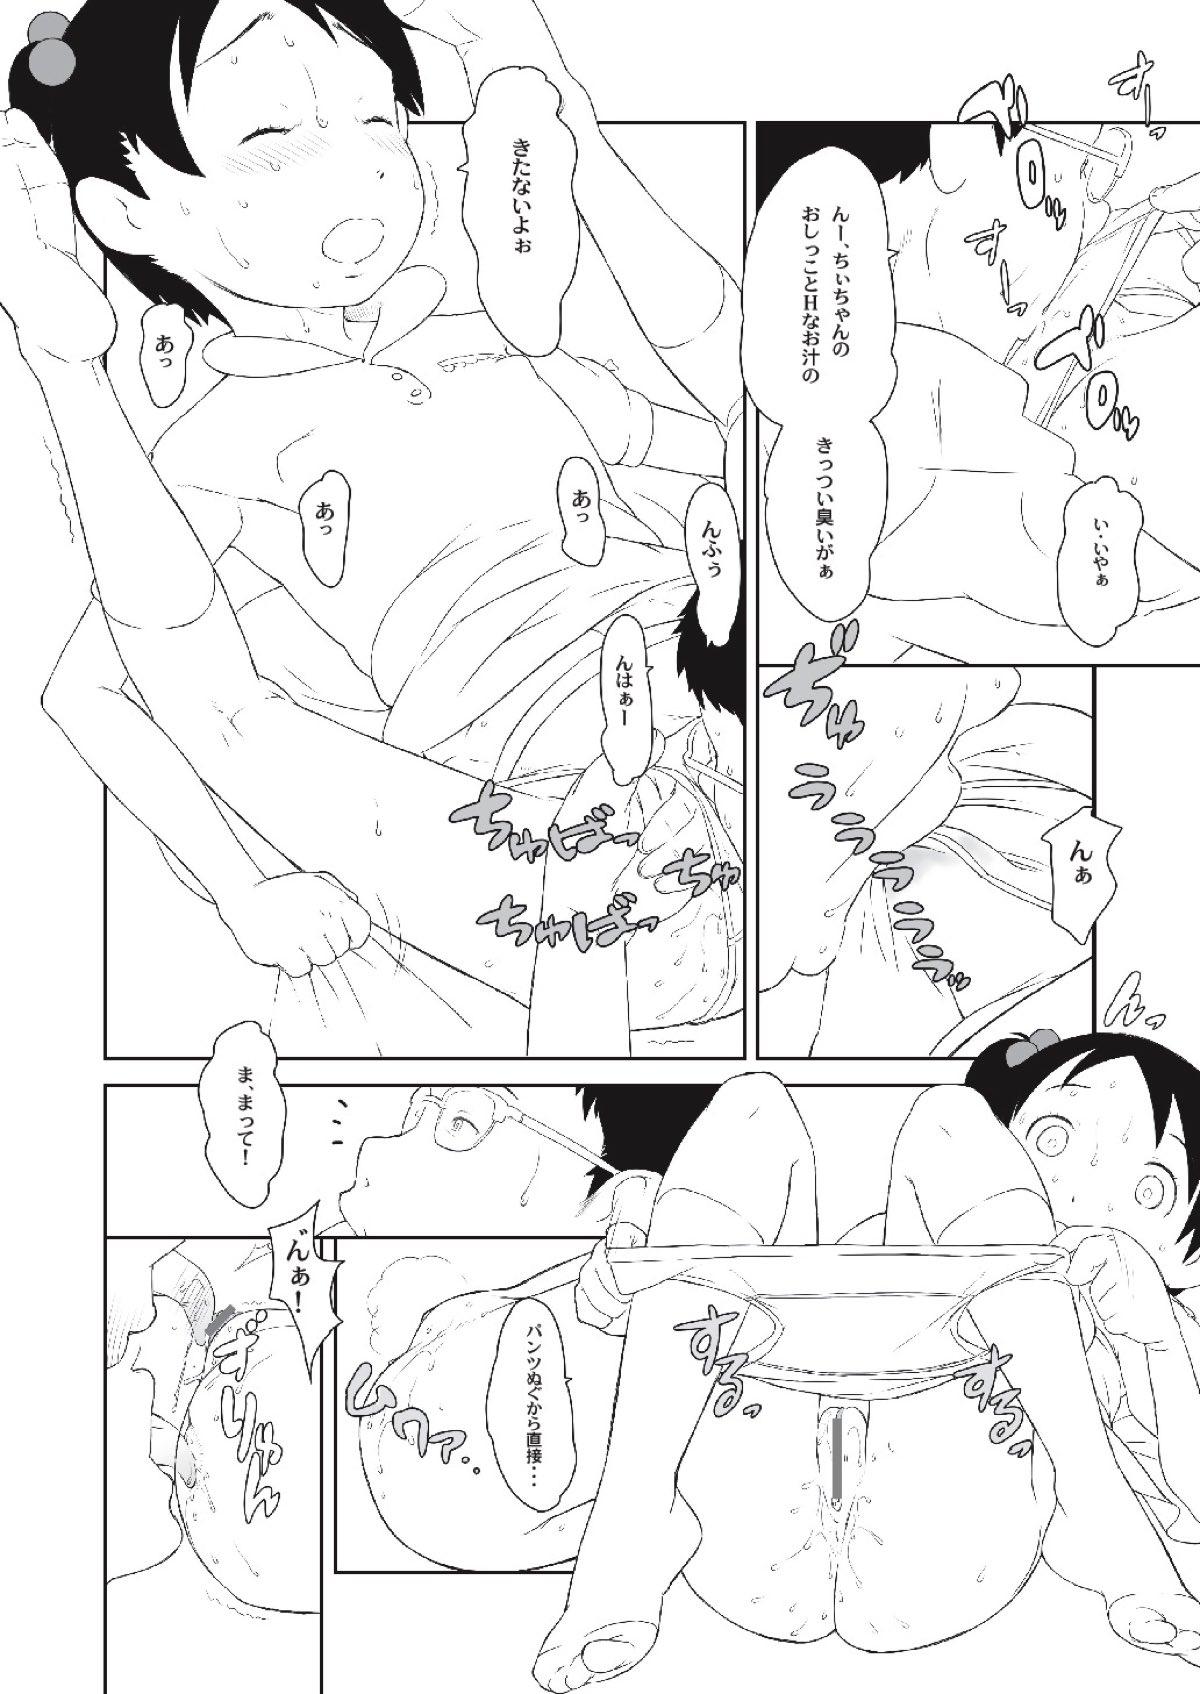 Gemendo Chii-chan no Oshare Erabi - Ichigo mashimaro Shecock - Page 12